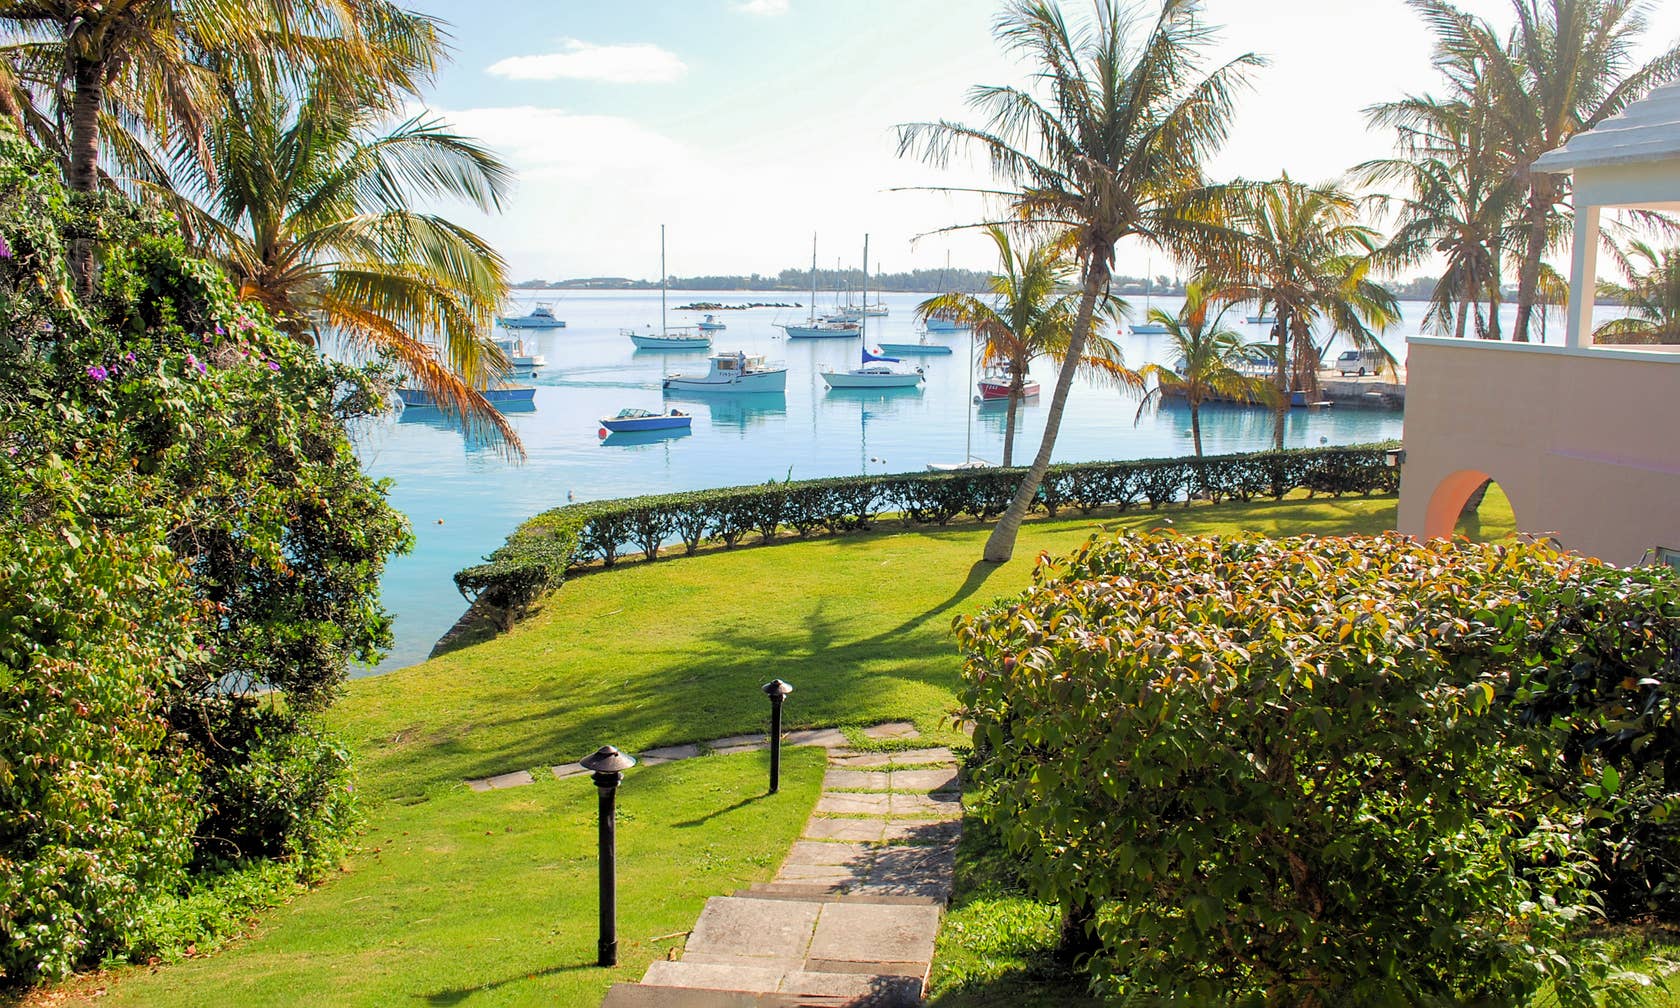 Holiday rentals in Bermuda